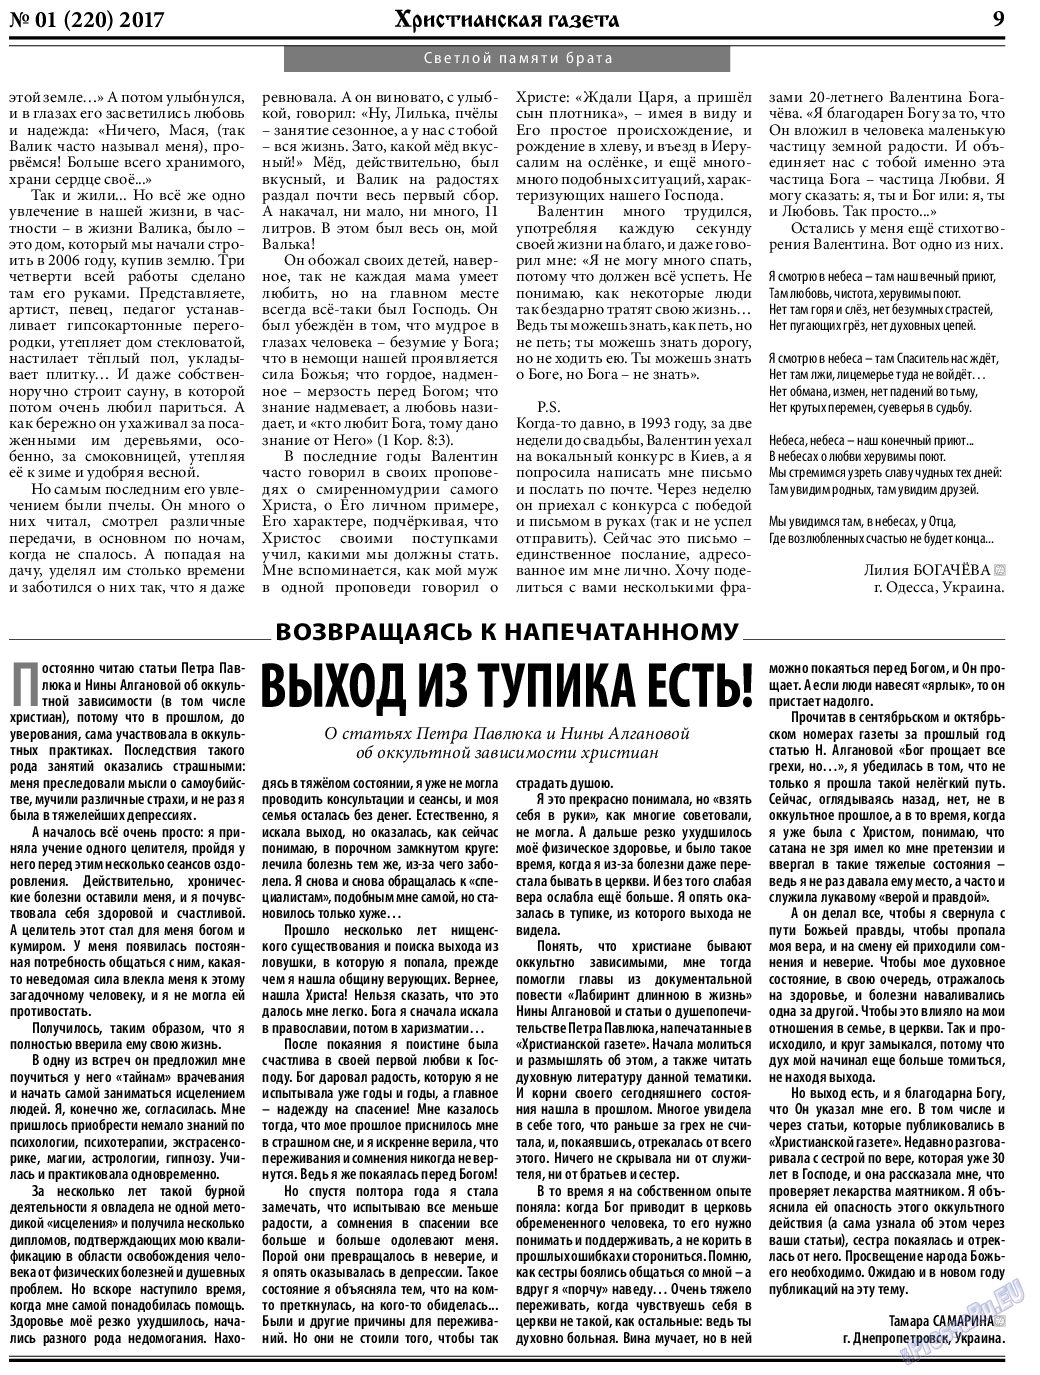 Христианская газета, газета. 2017 №1 стр.9